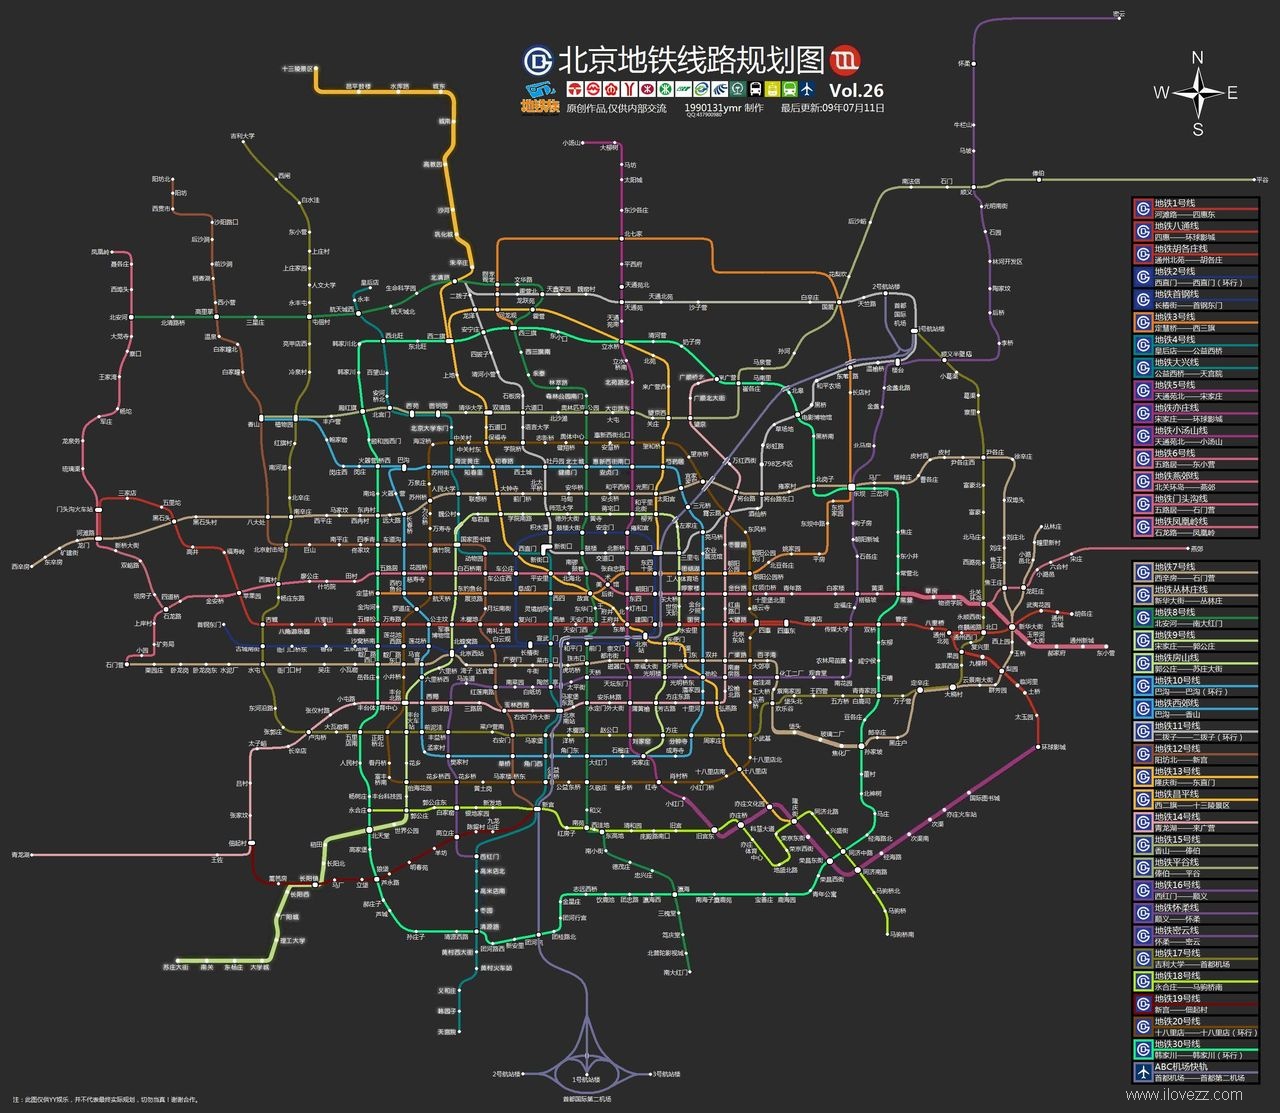 北京地铁终极规划图 看完我崩溃了